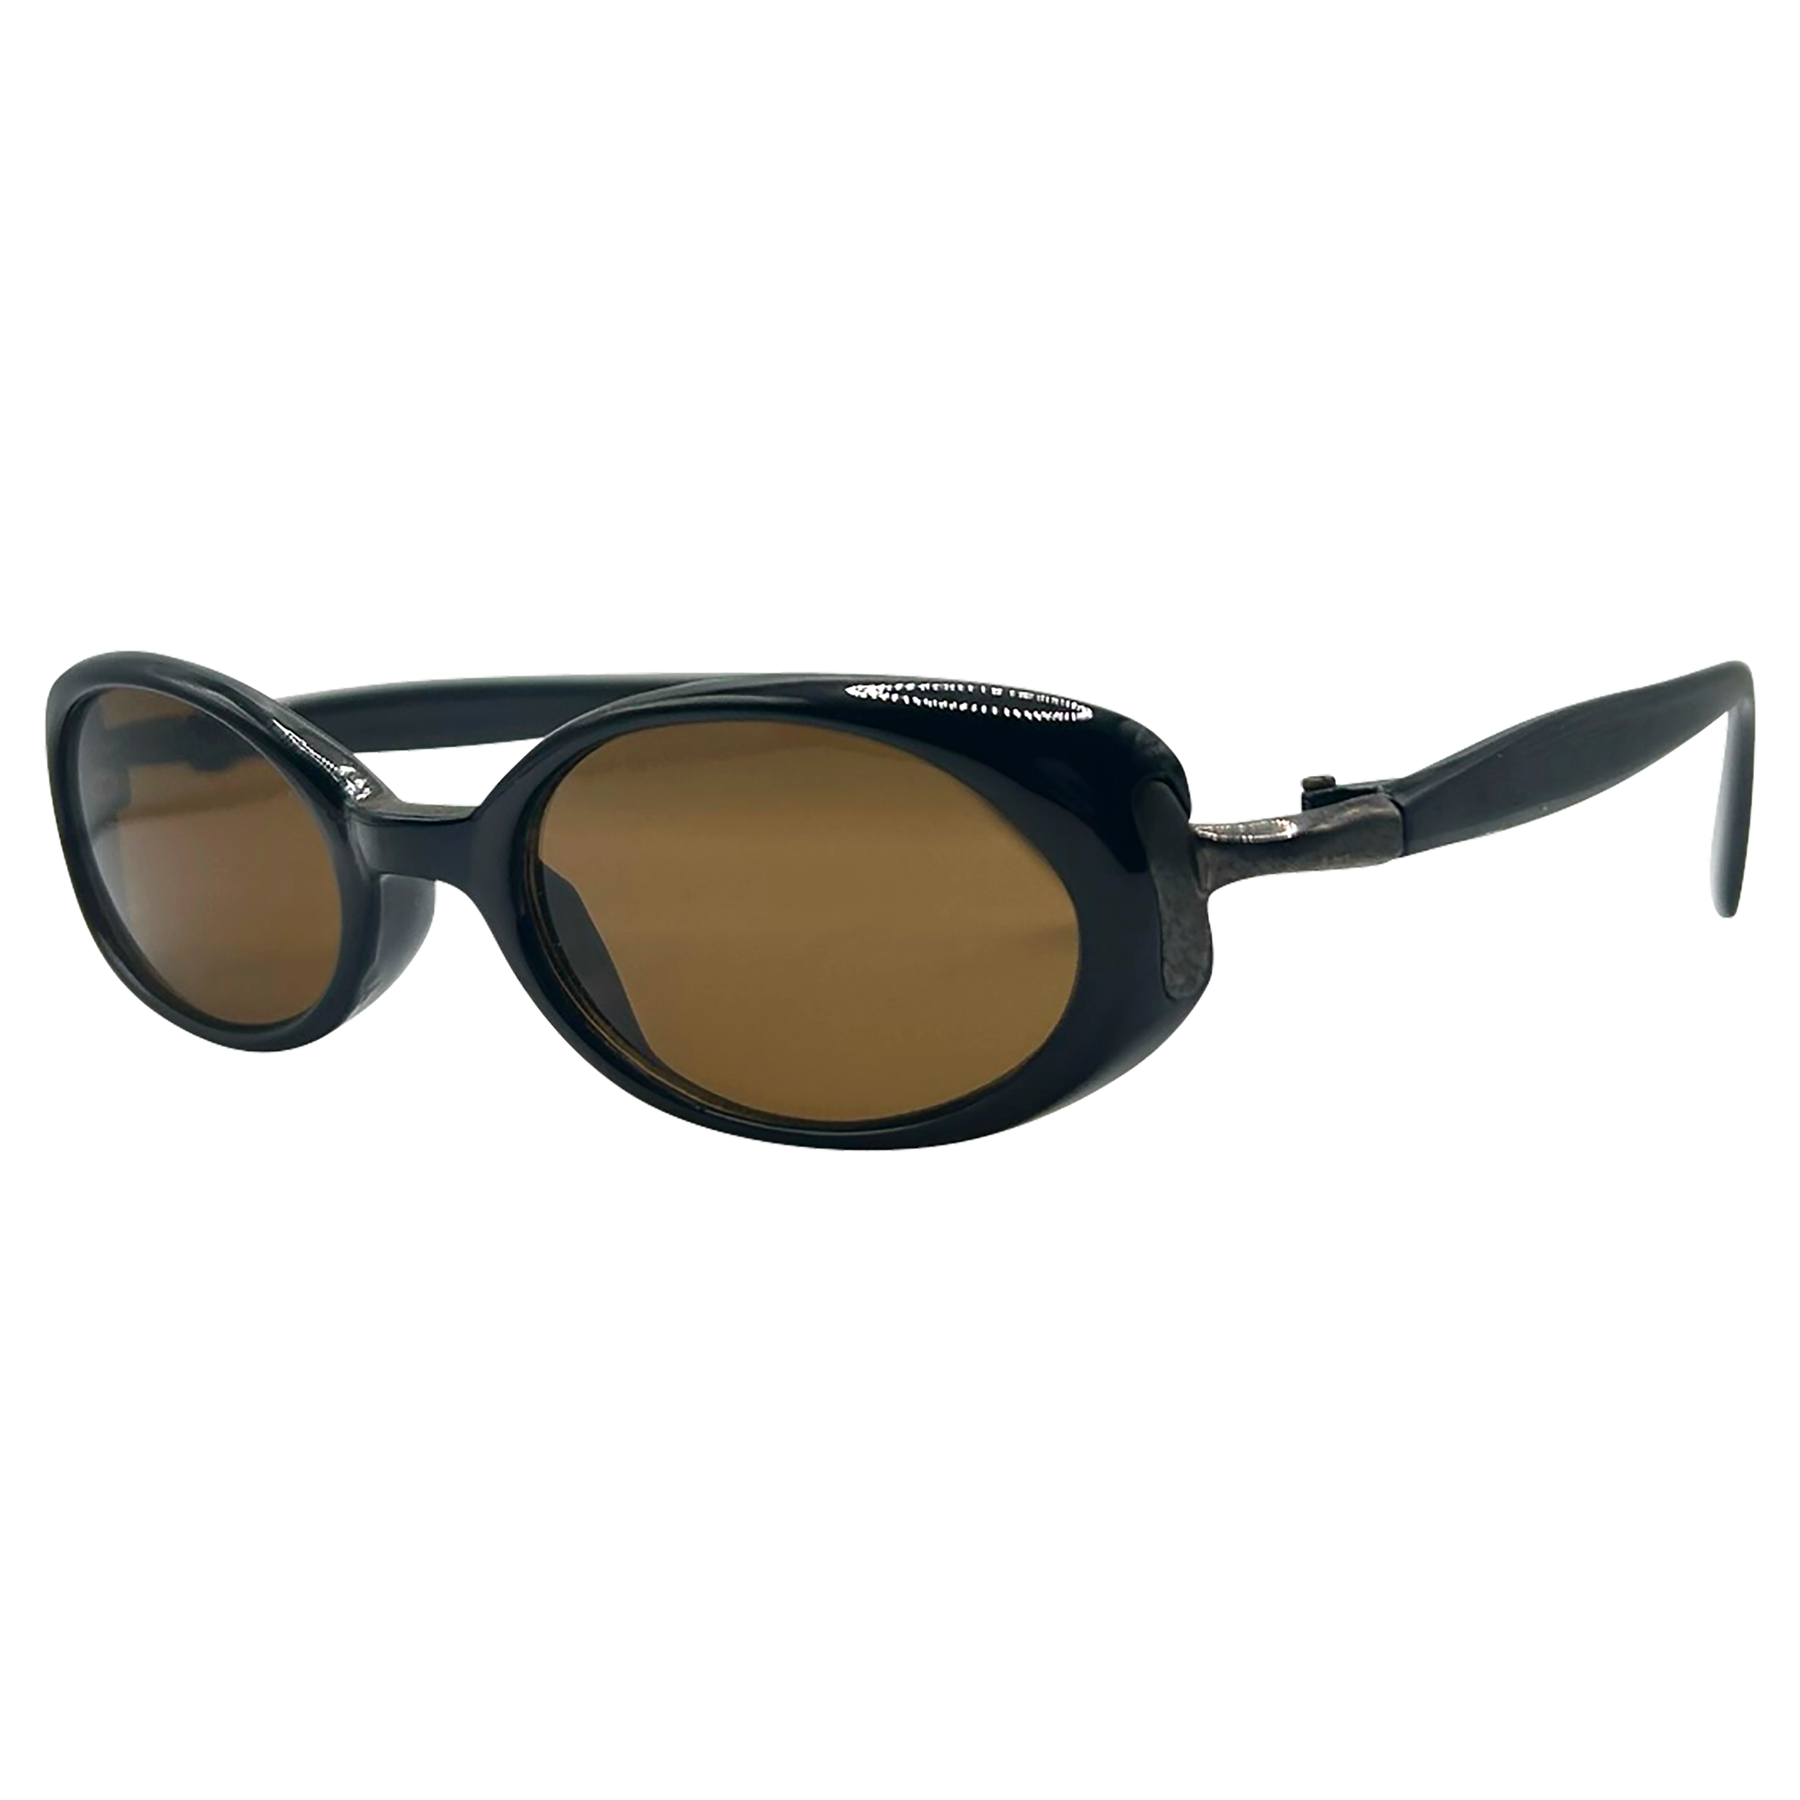 TWERP Black/Brown Oval Sunglasses